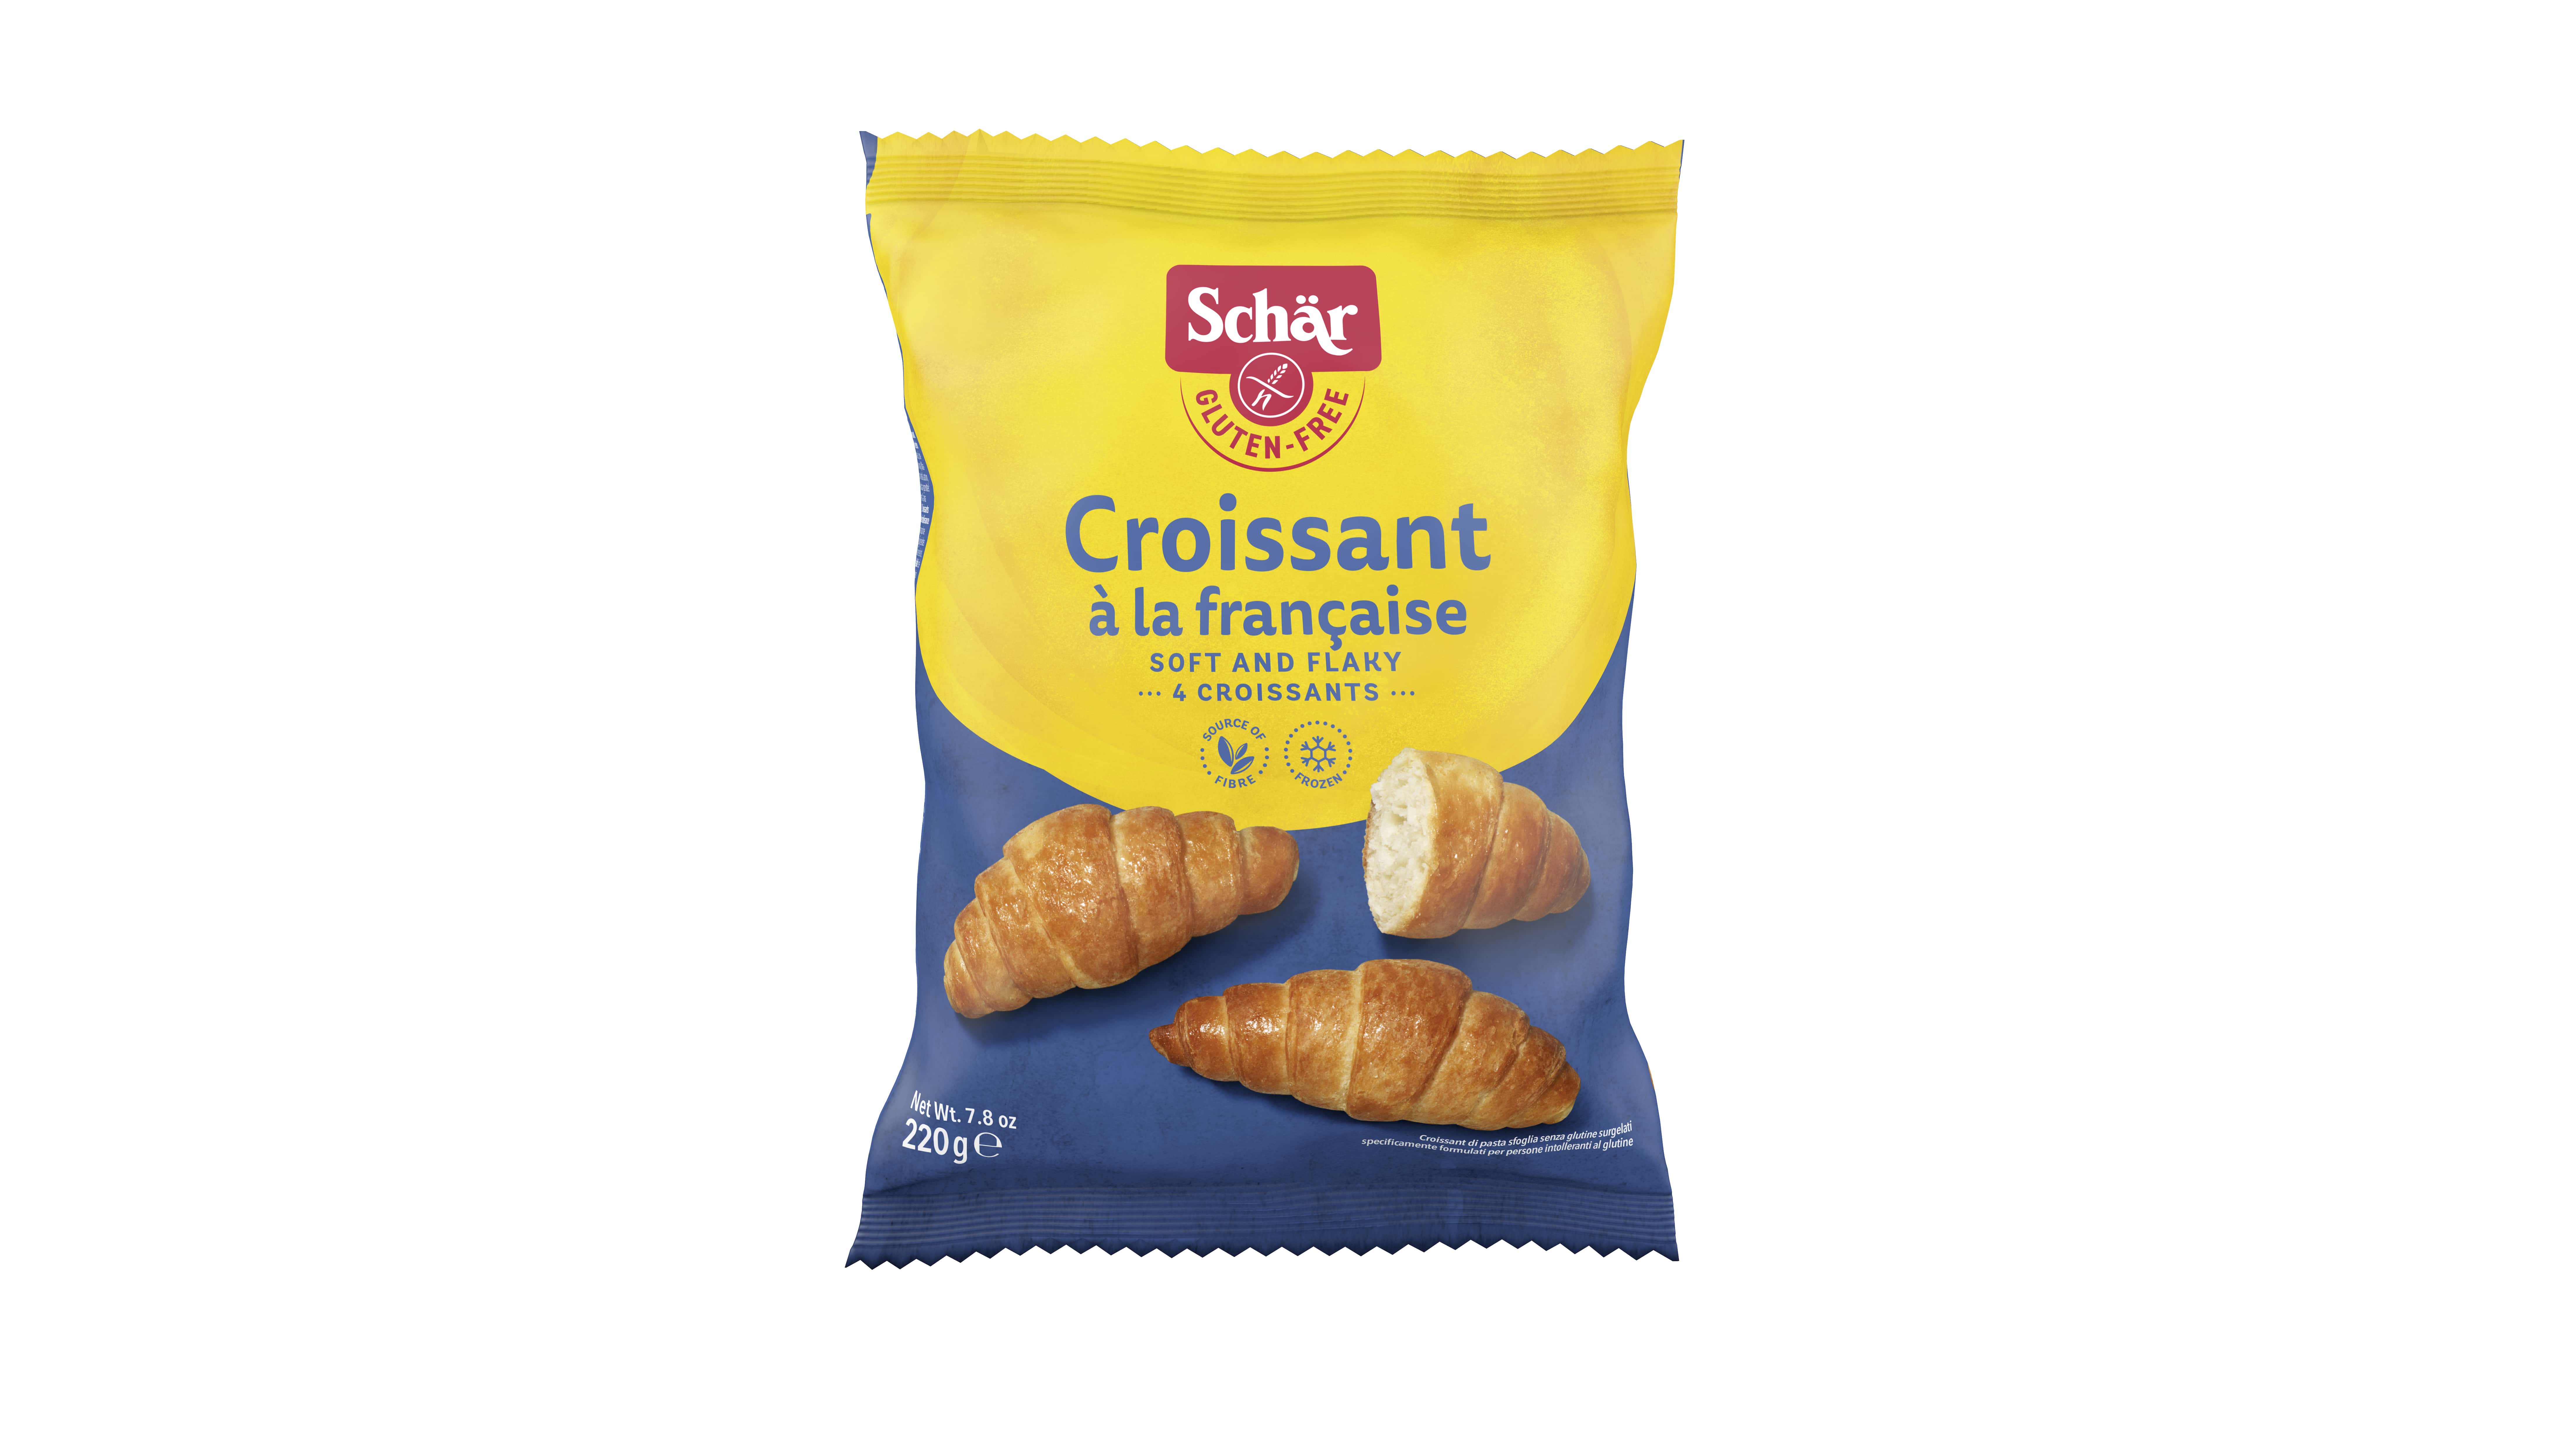 Schär Croissants glutenvrij 220g